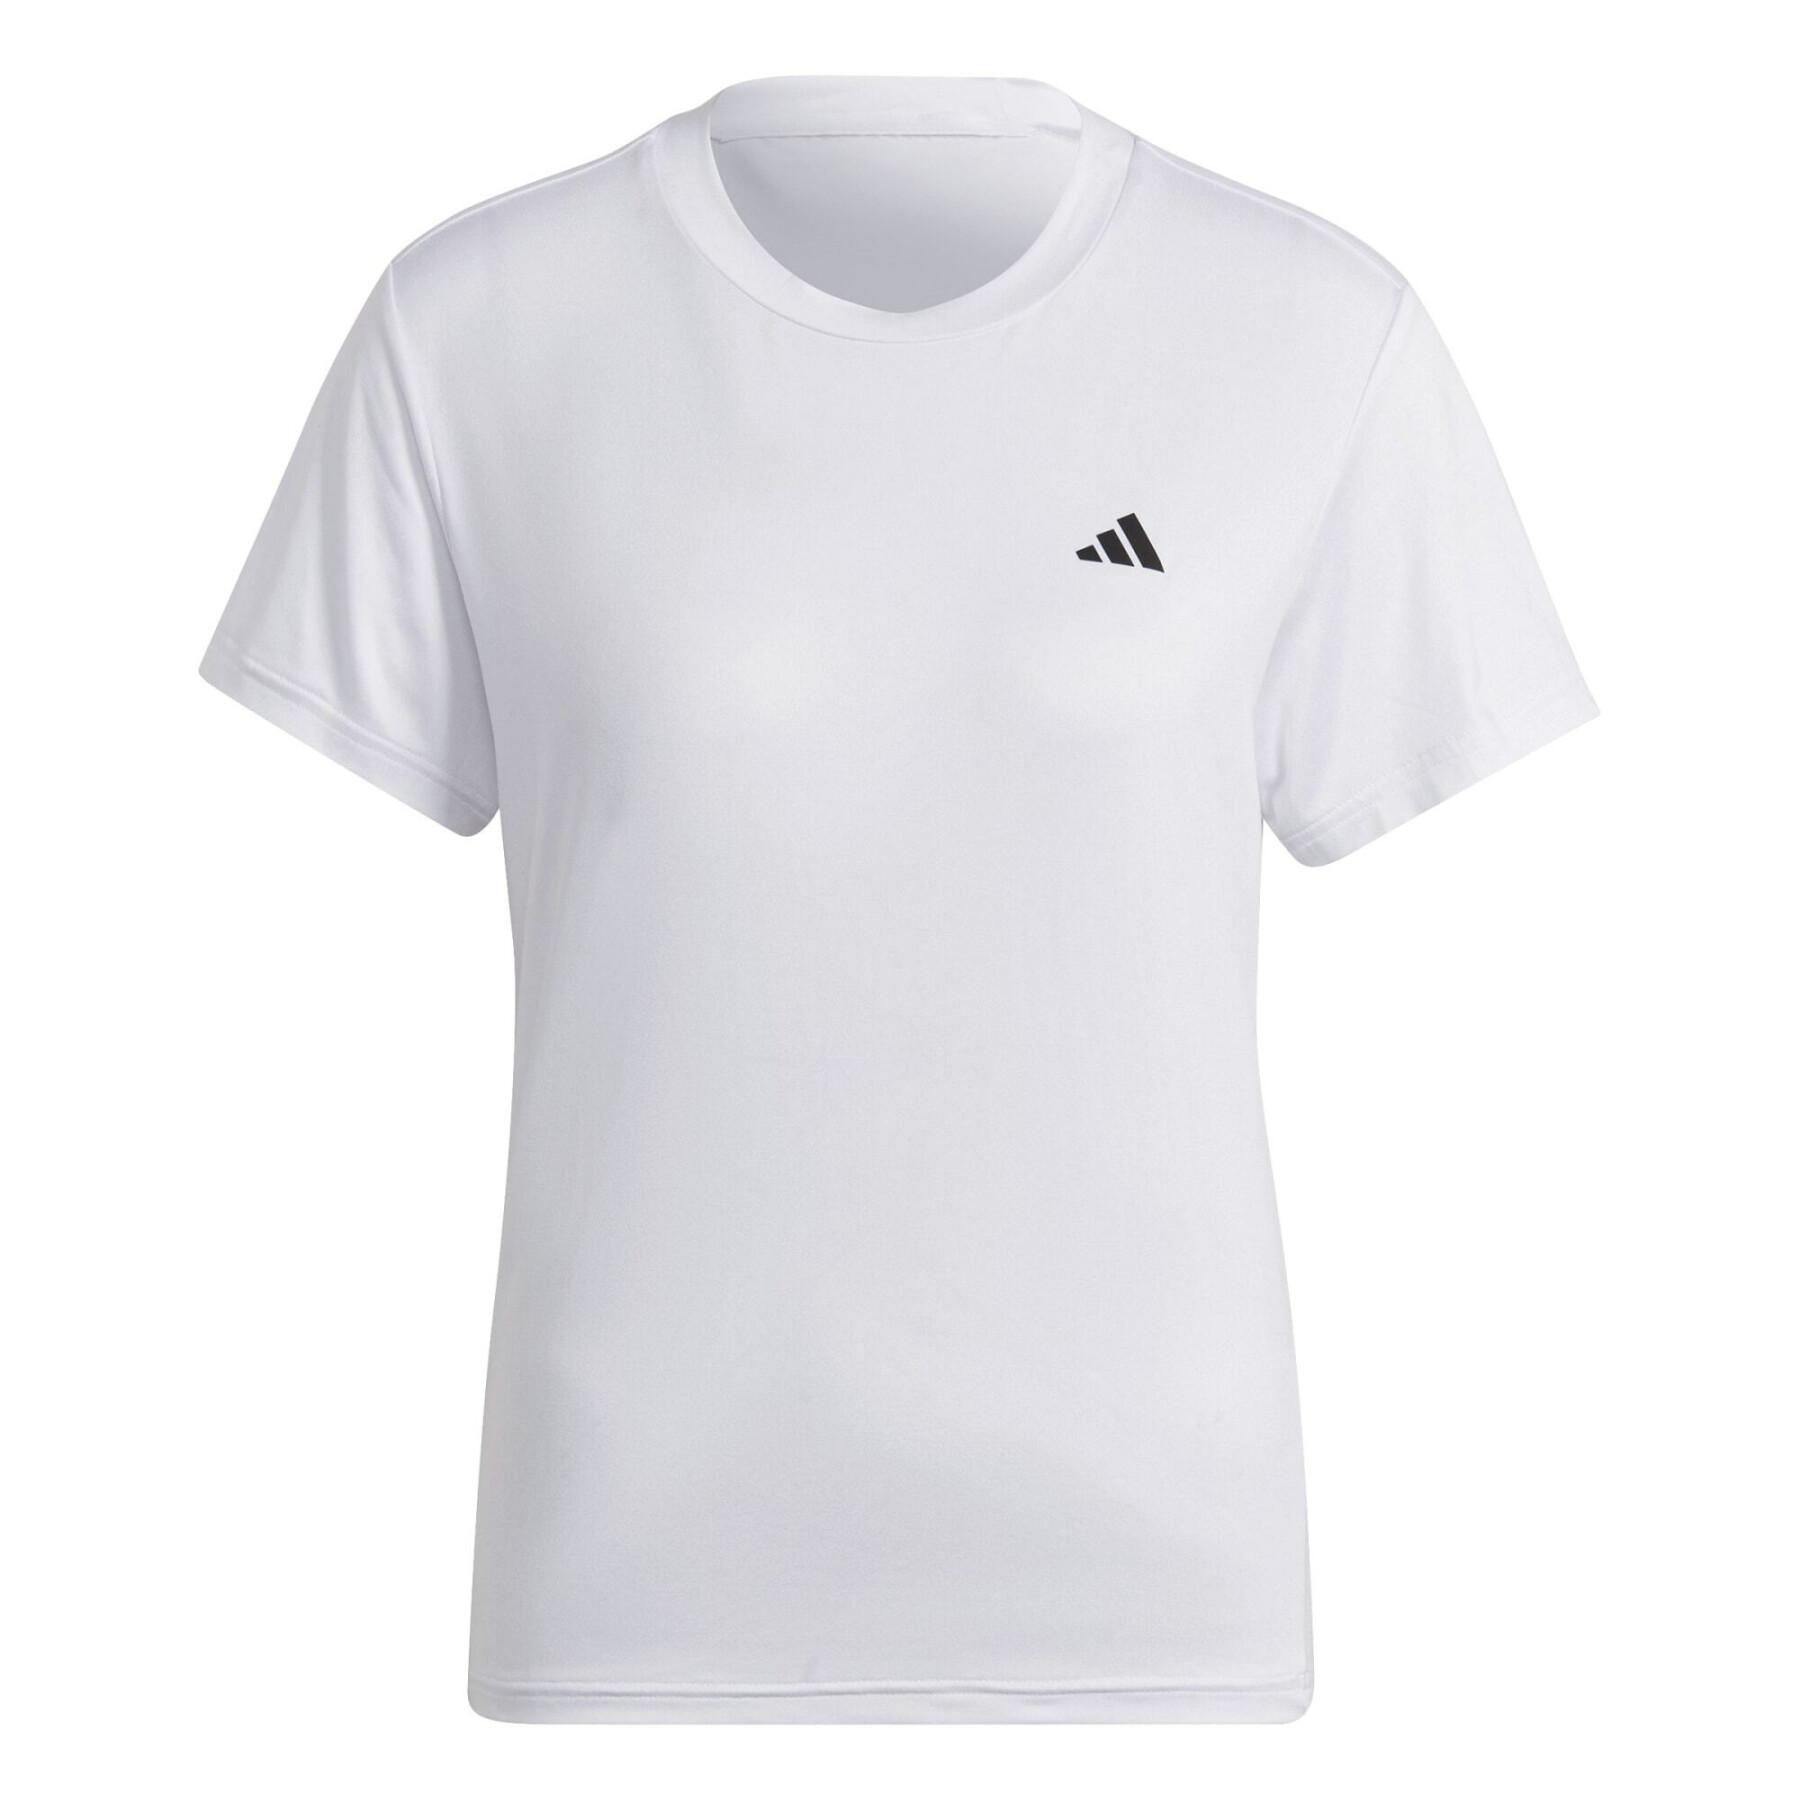 Koszulka treningowa dla kobiet adidas Aeroready